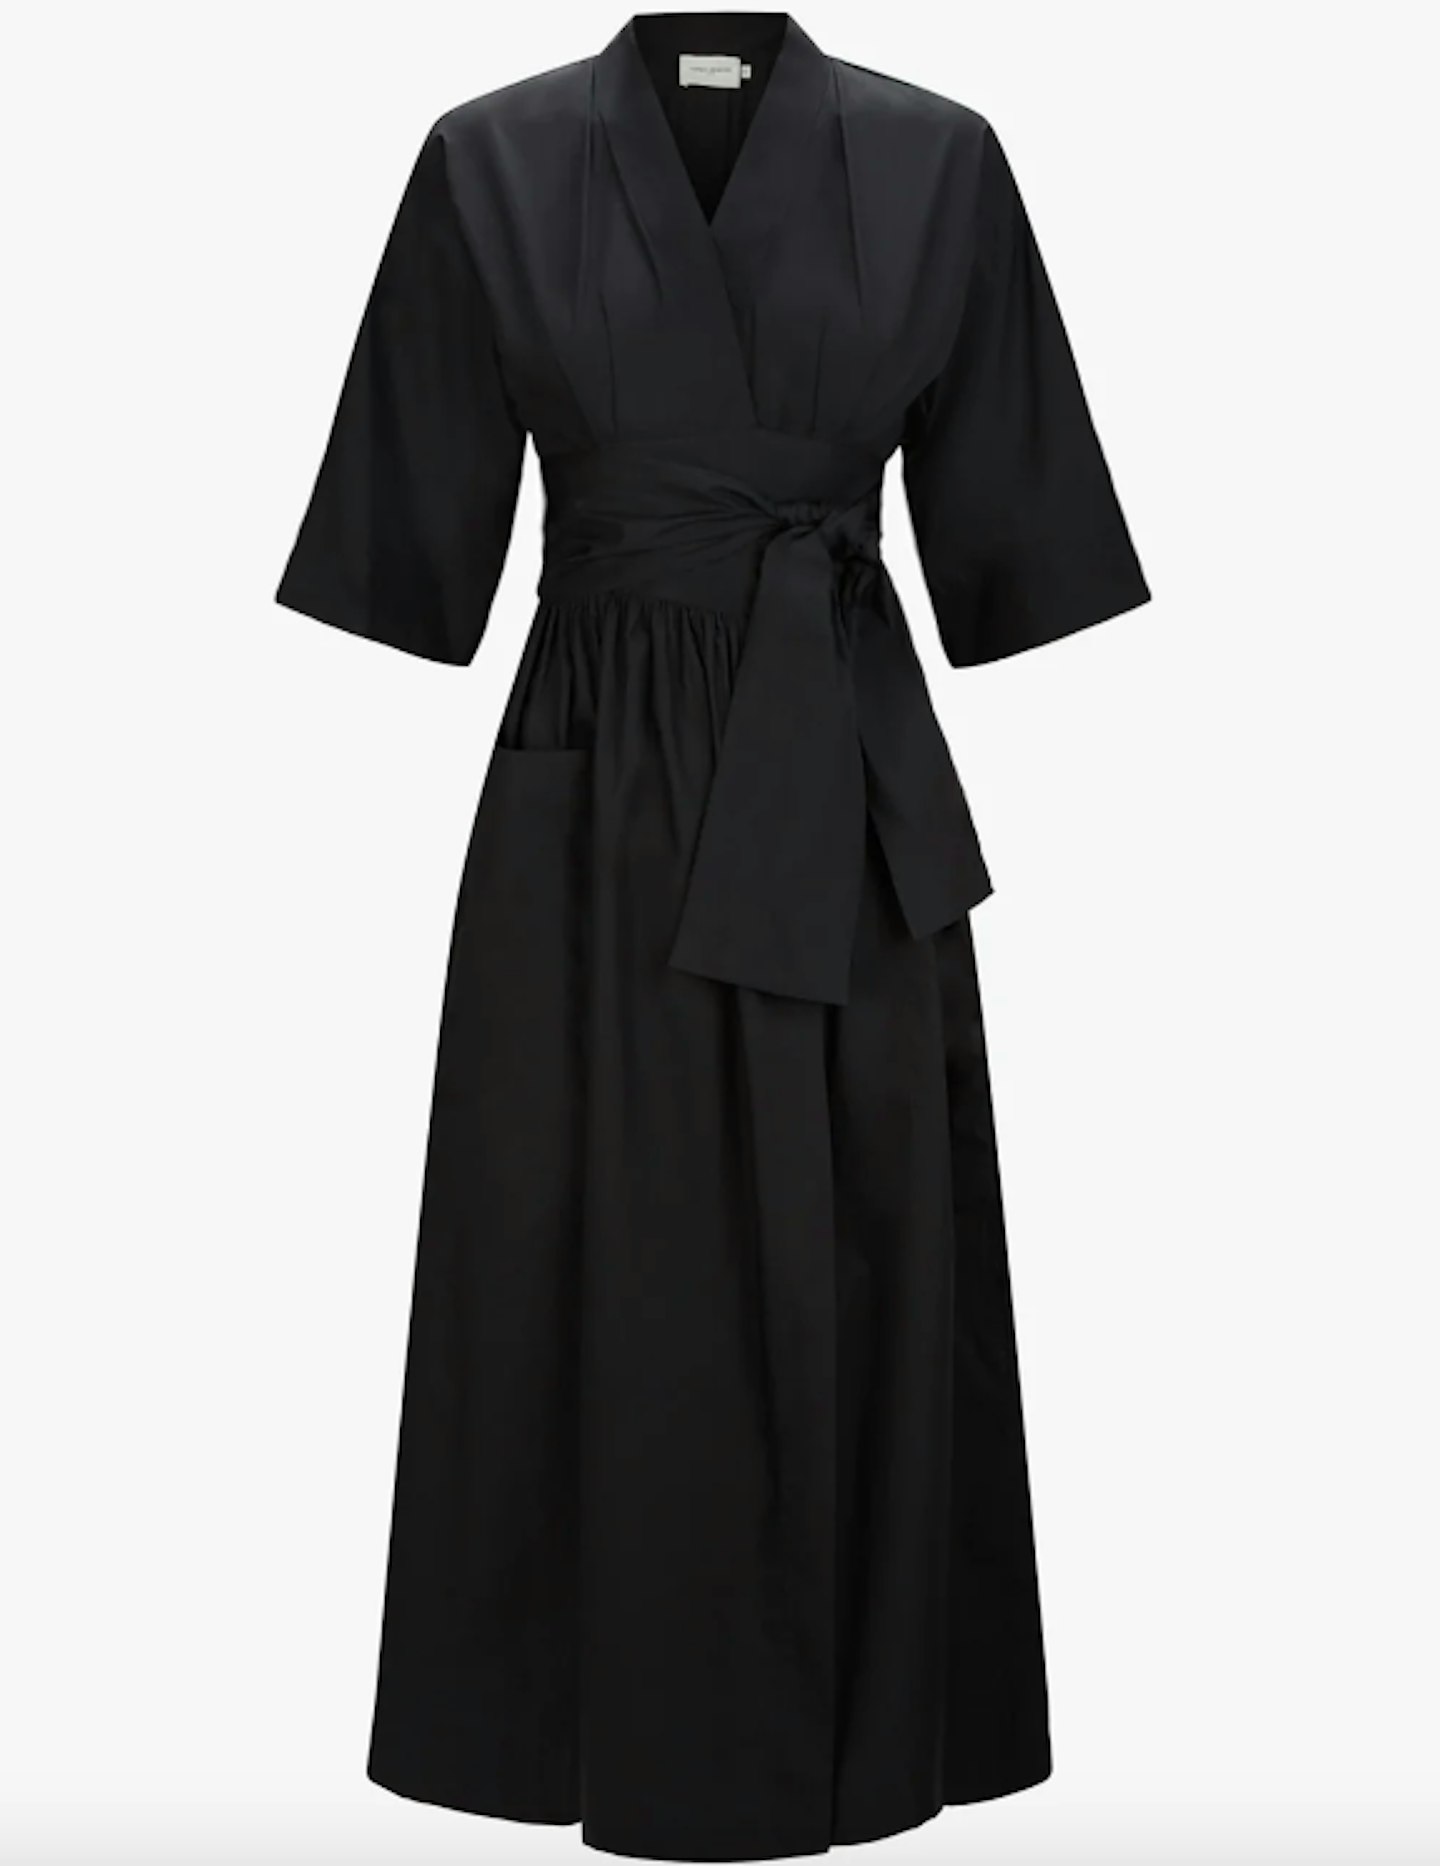 Three Graces London, Charita Dress In Black, £580